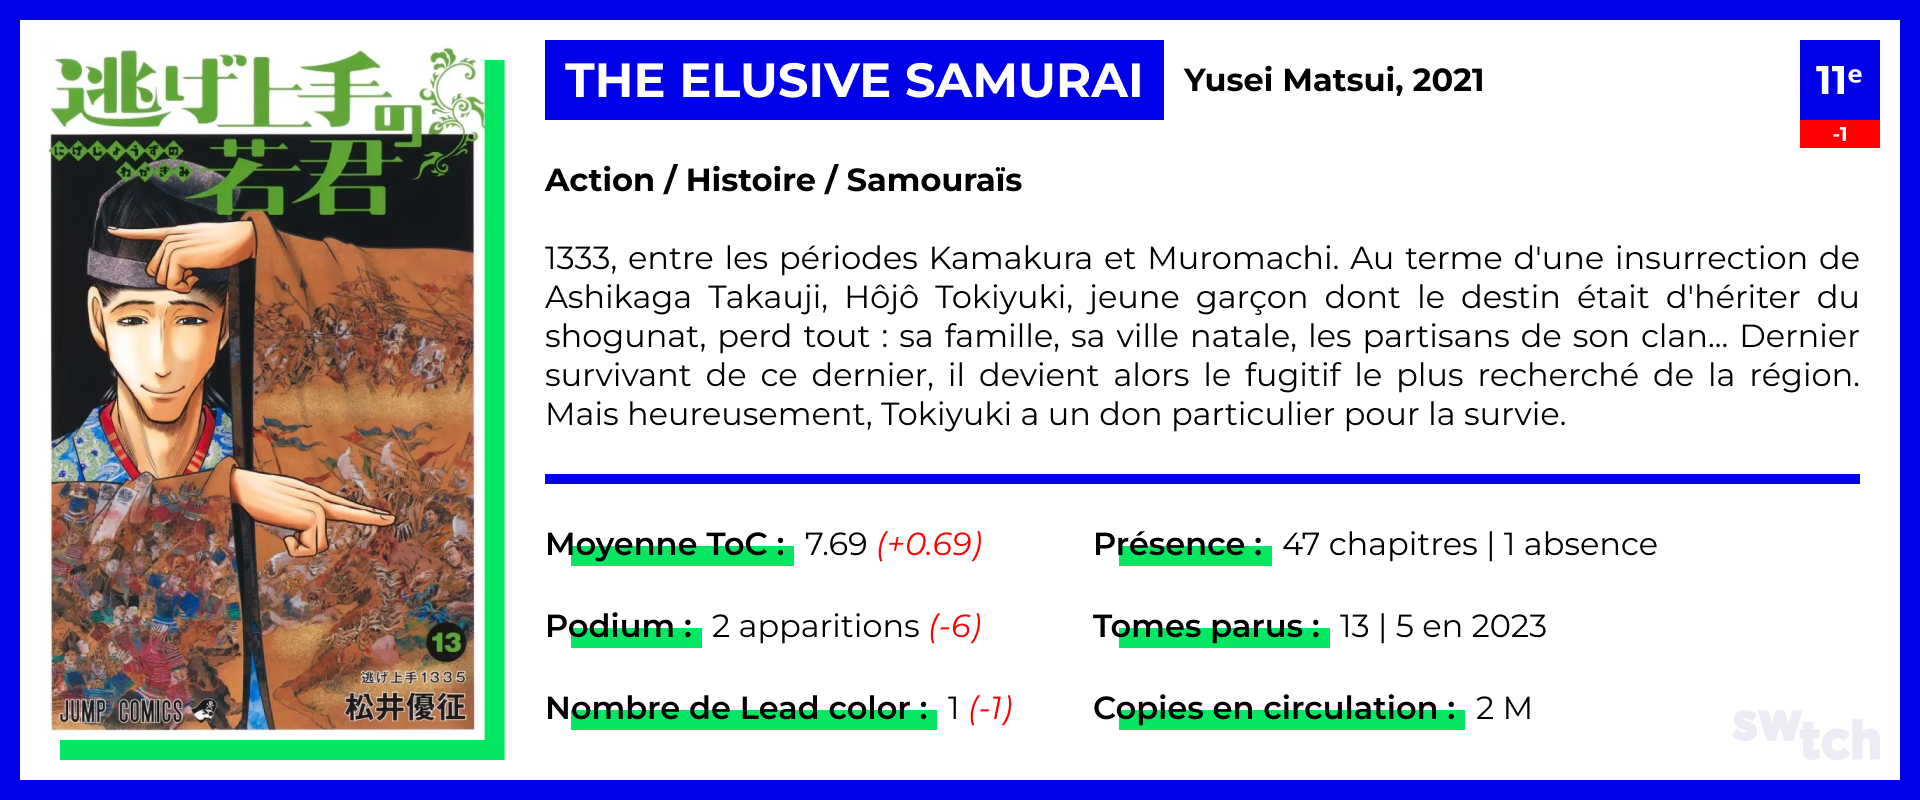 The Elusive Samurai